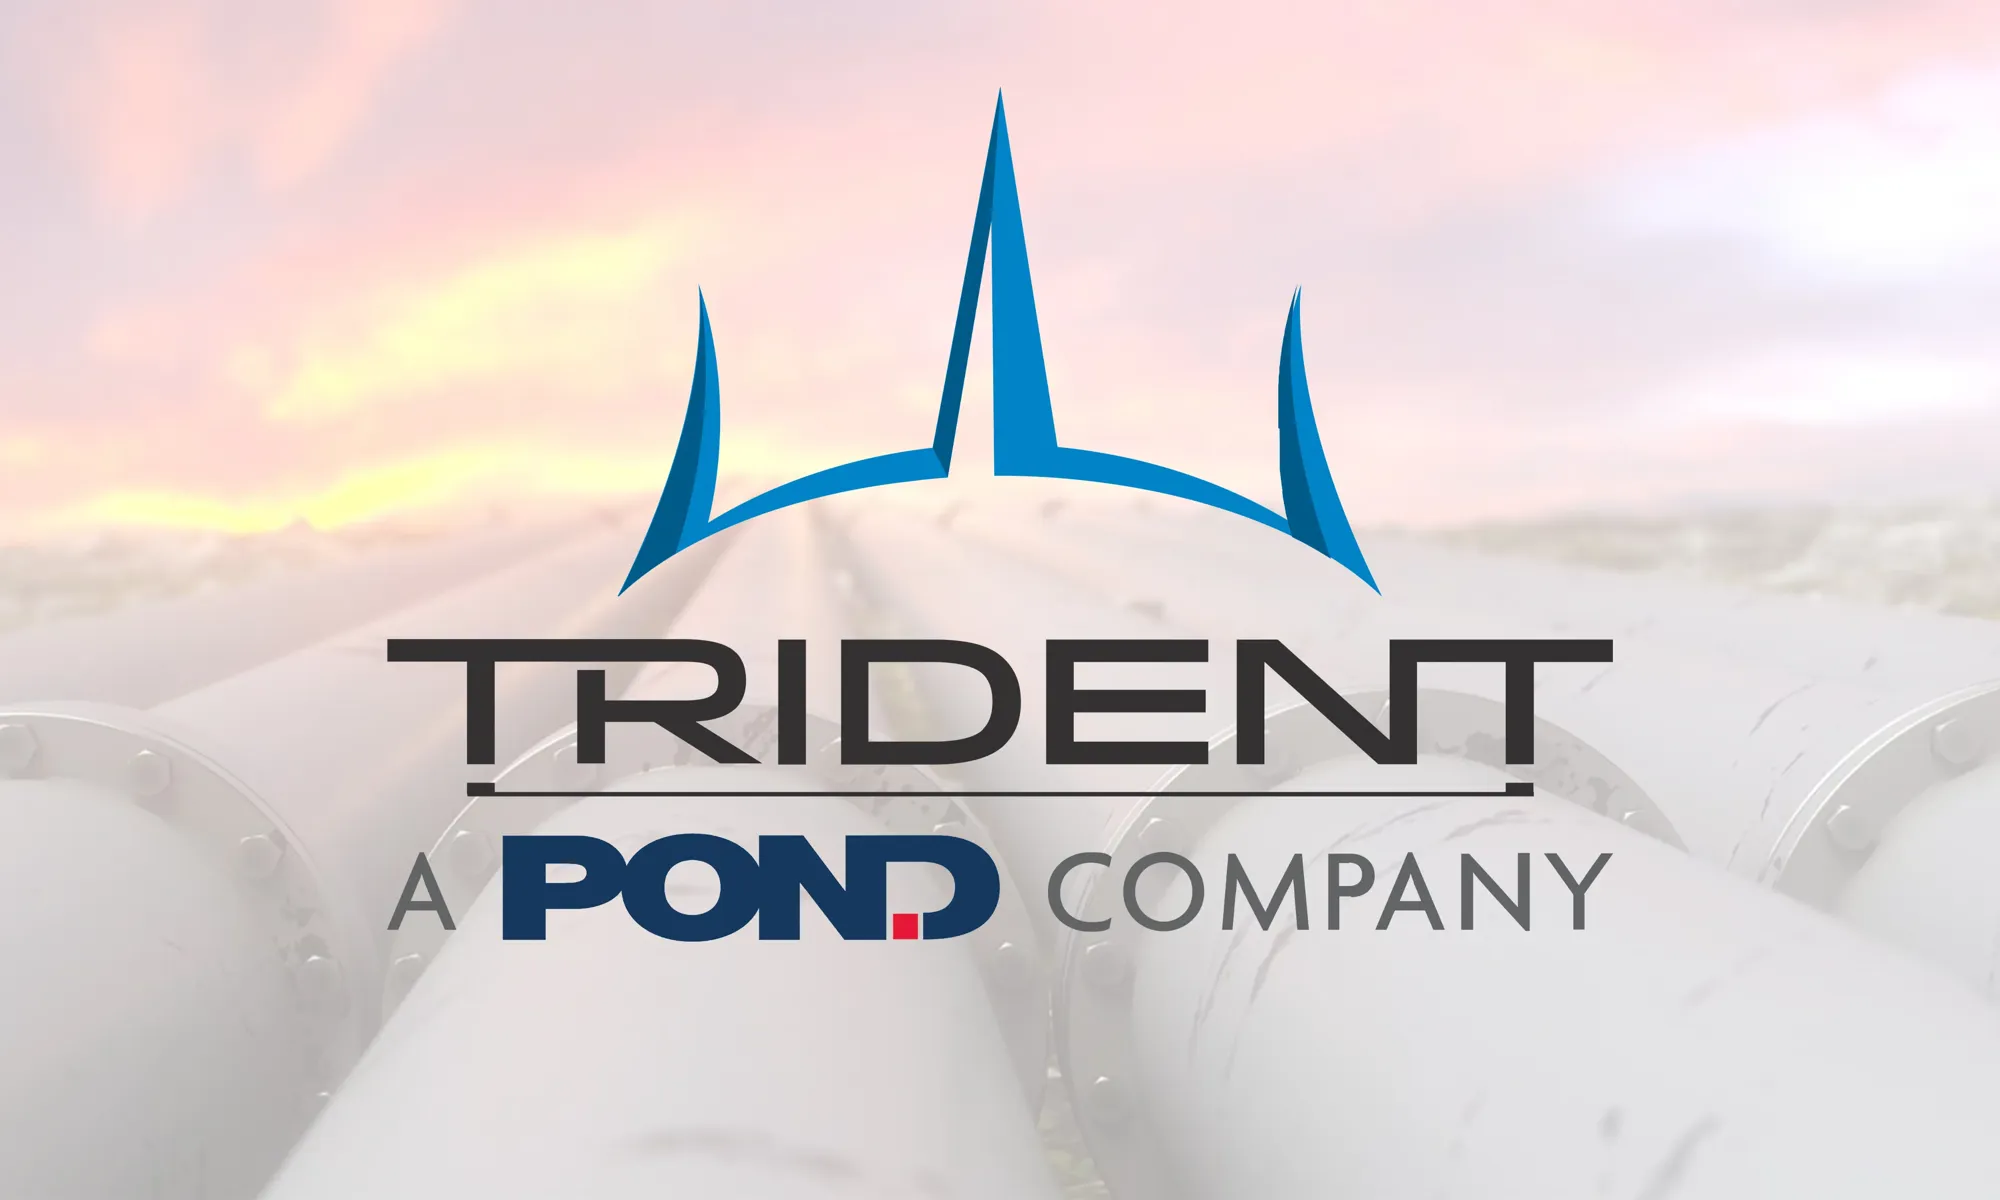 Trident - a Pond company